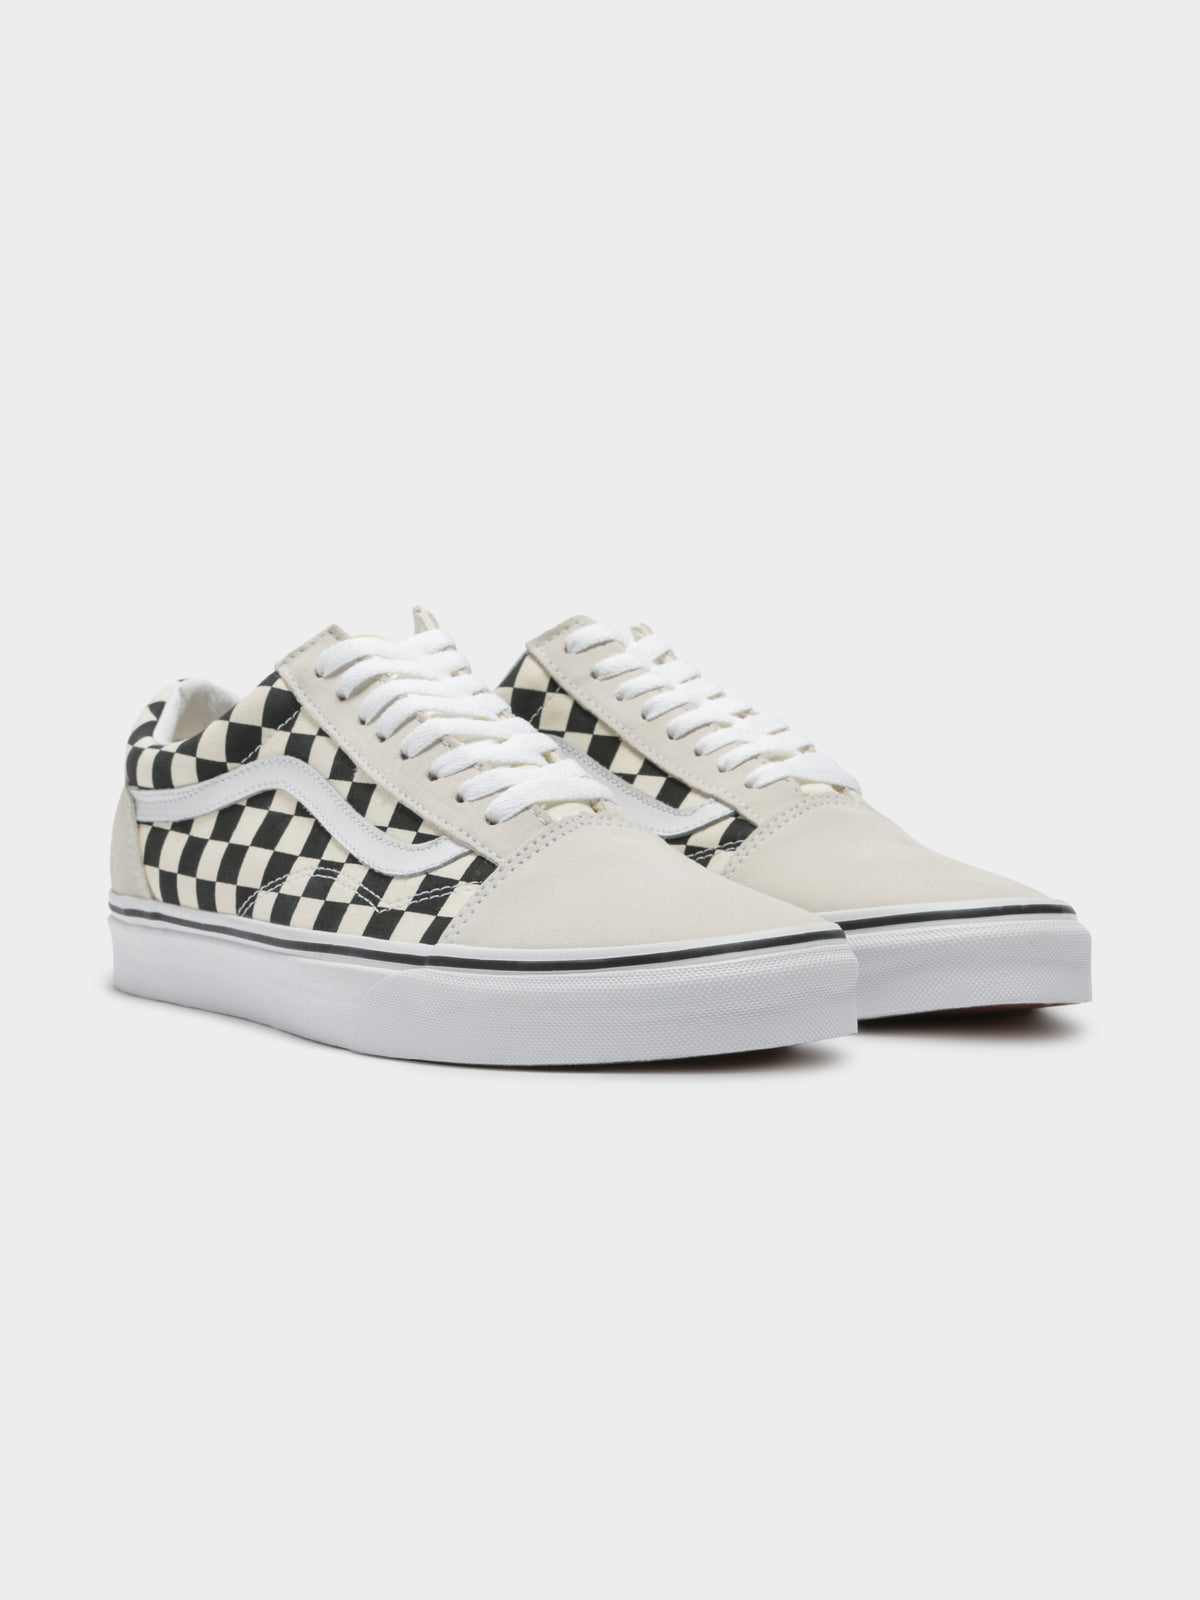 Unisex Old Skool Checkered Sneaker in White &amp; Black